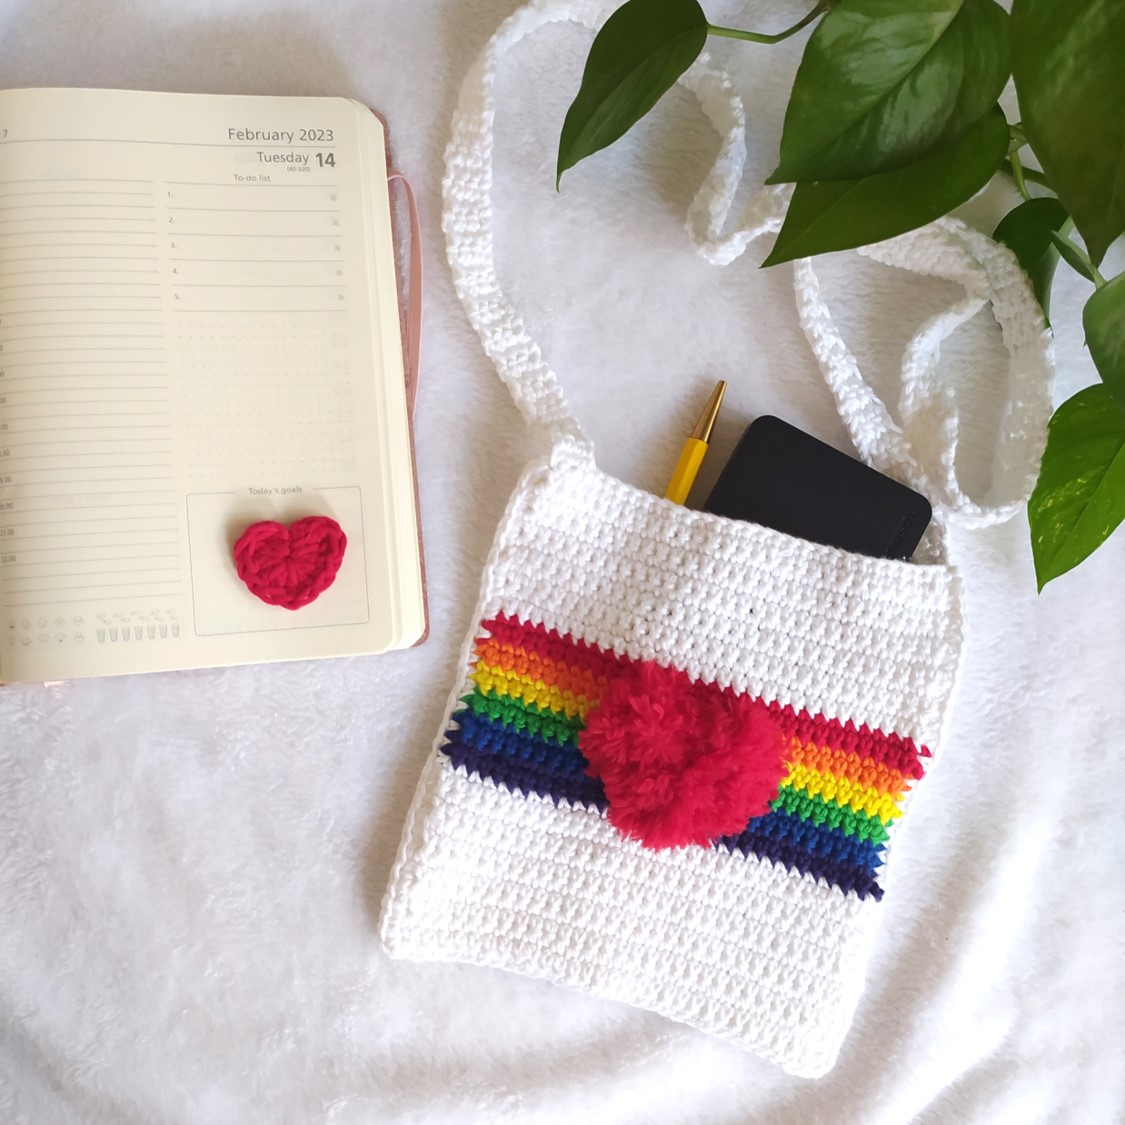 The Love Is Love Crochet Bag Pattern